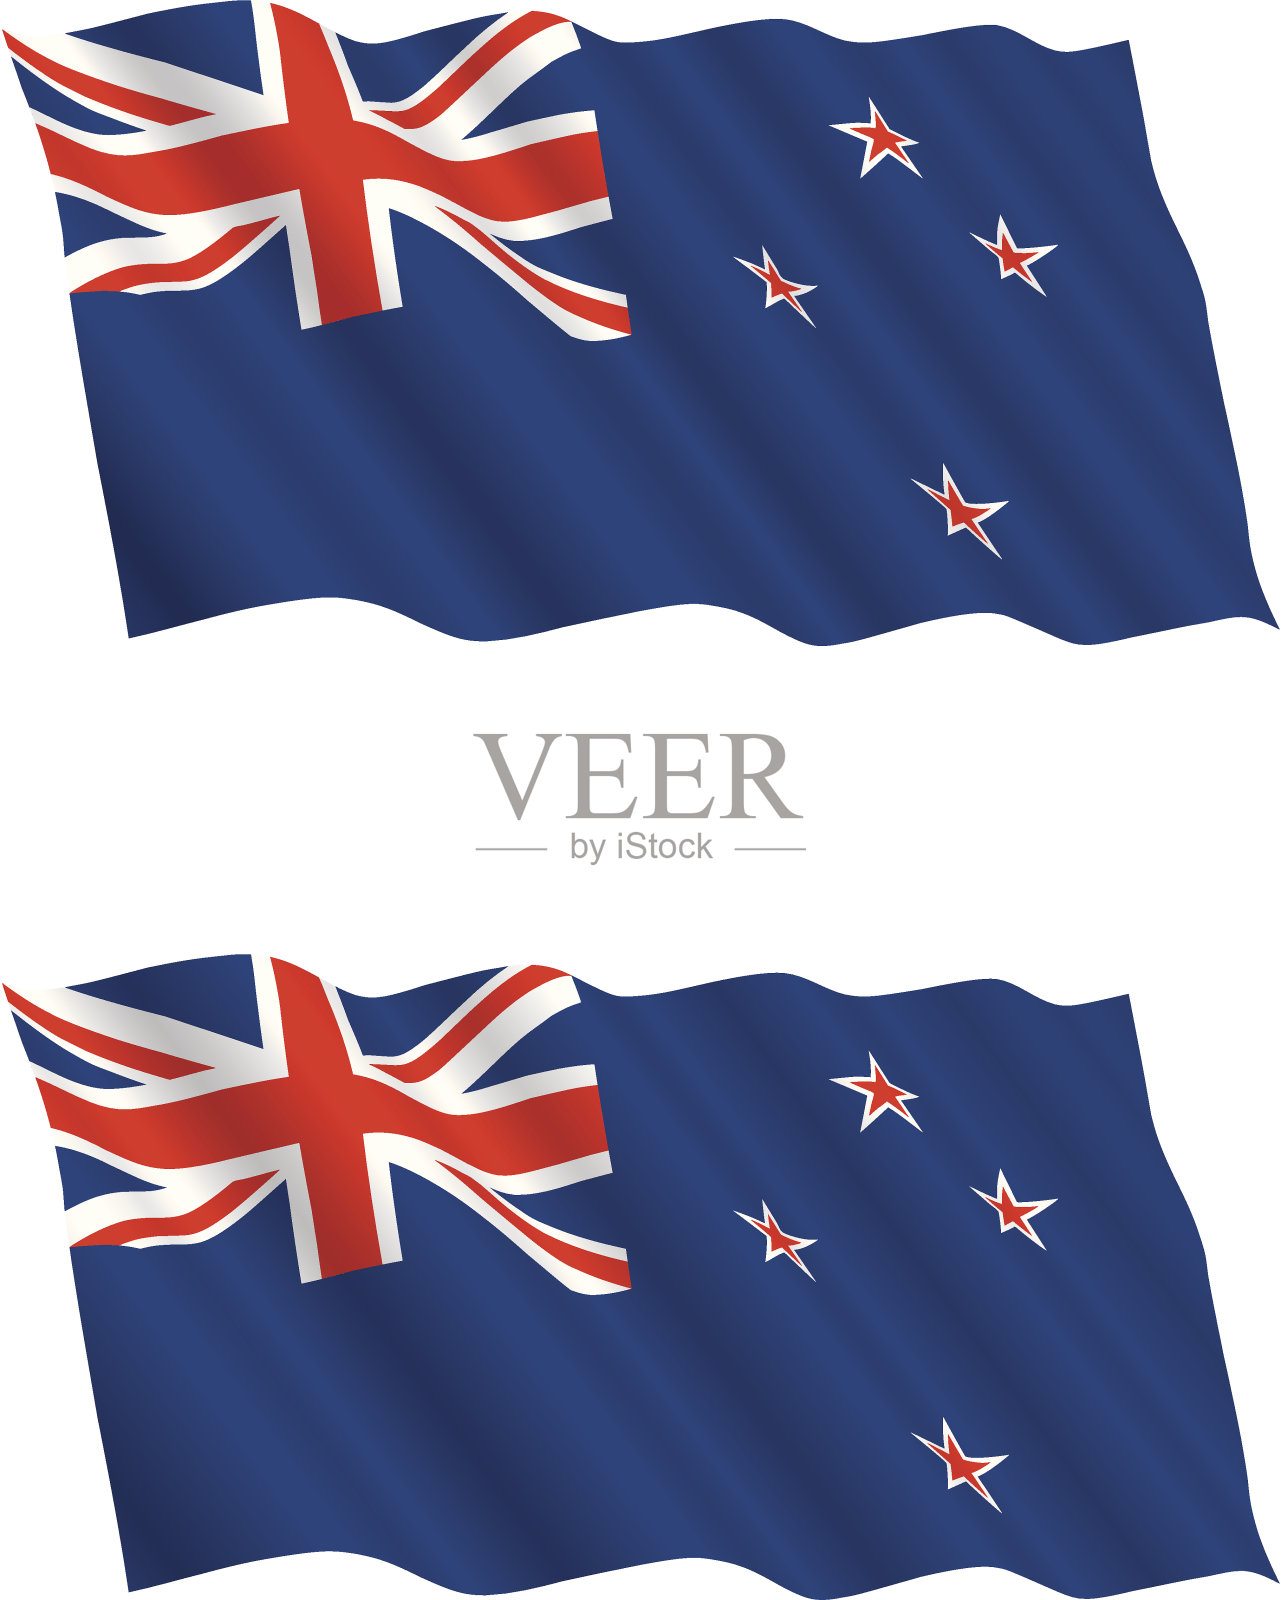 新西兰国旗迎风飘扬设计元素图片